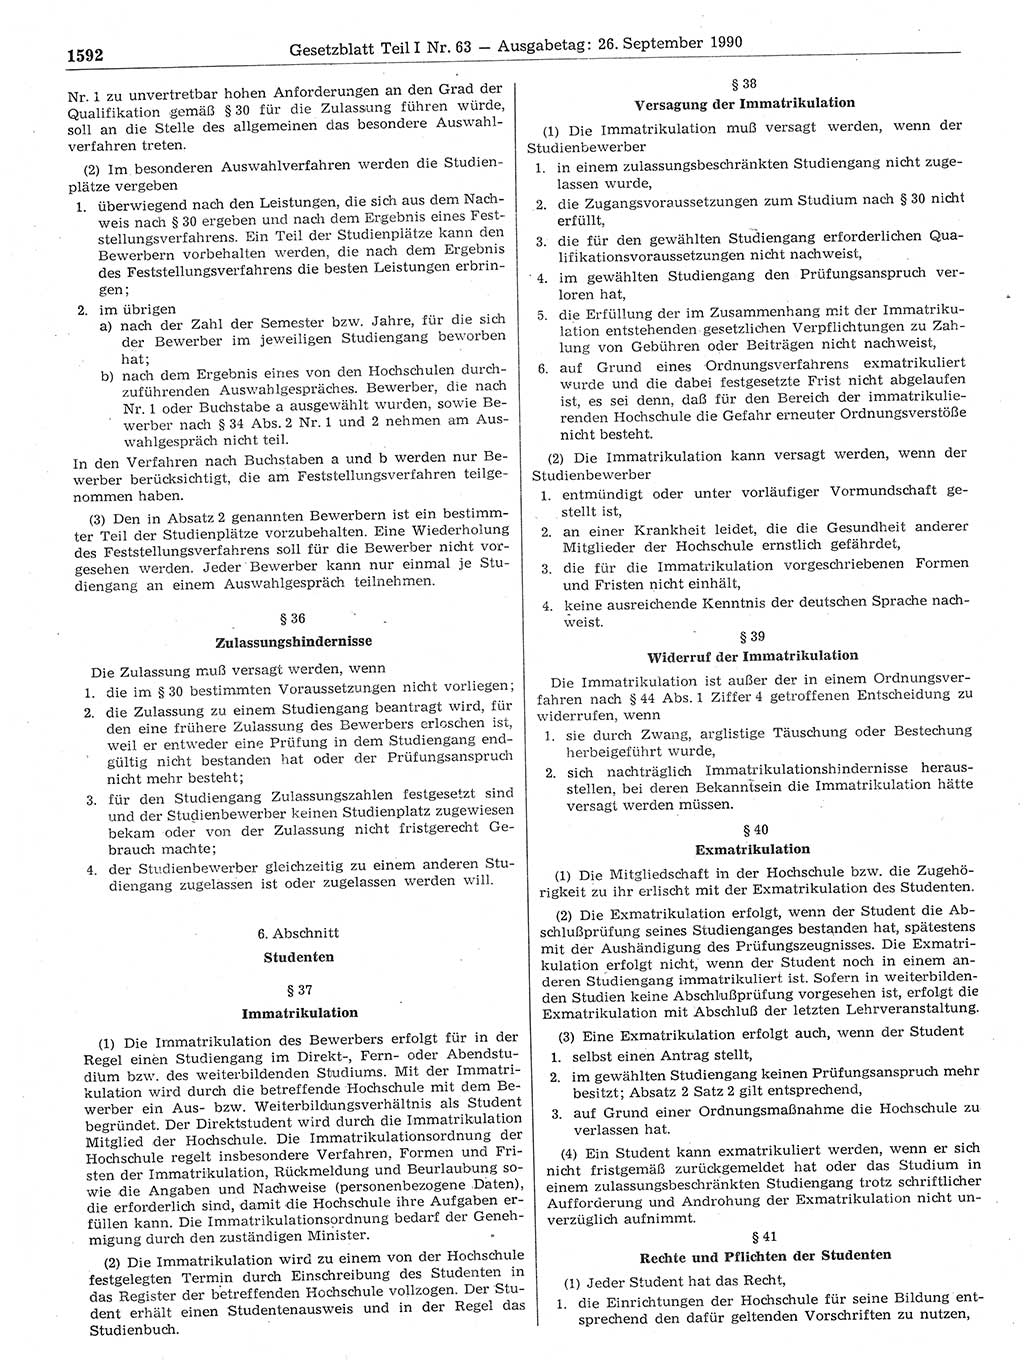 Gesetzblatt (GBl.) der Deutschen Demokratischen Republik (DDR) Teil Ⅰ 1990, Seite 1592 (GBl. DDR Ⅰ 1990, S. 1592)